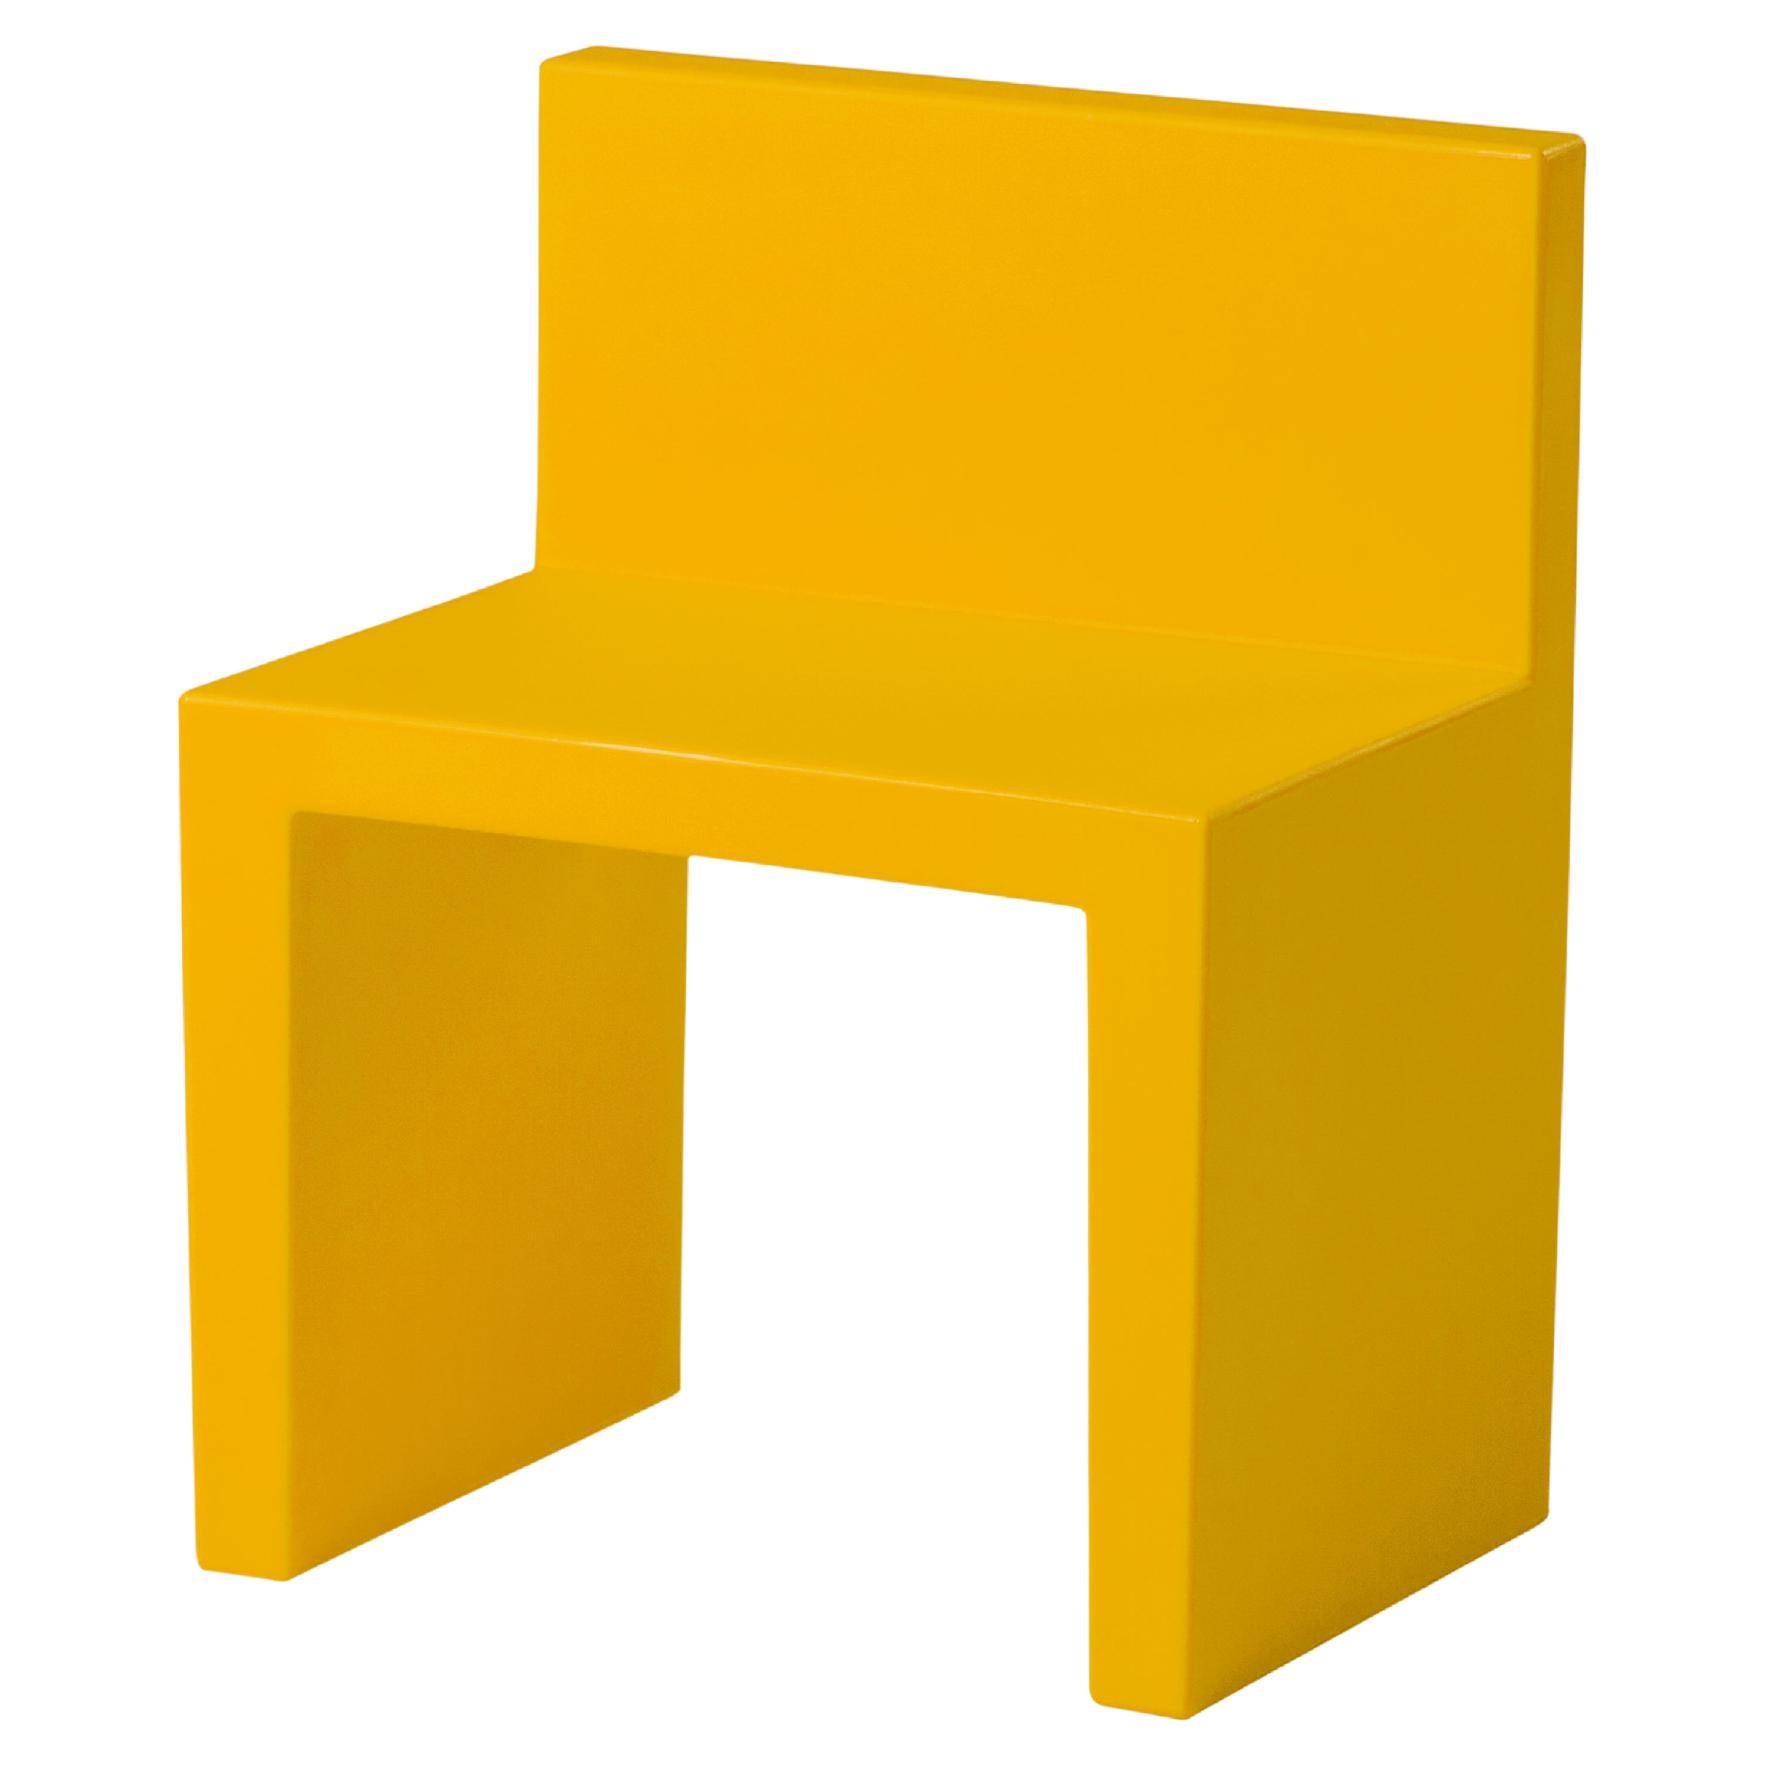 Chaise Slide Design Angolo Retto pour enfants en jaune safran par Slide Studio